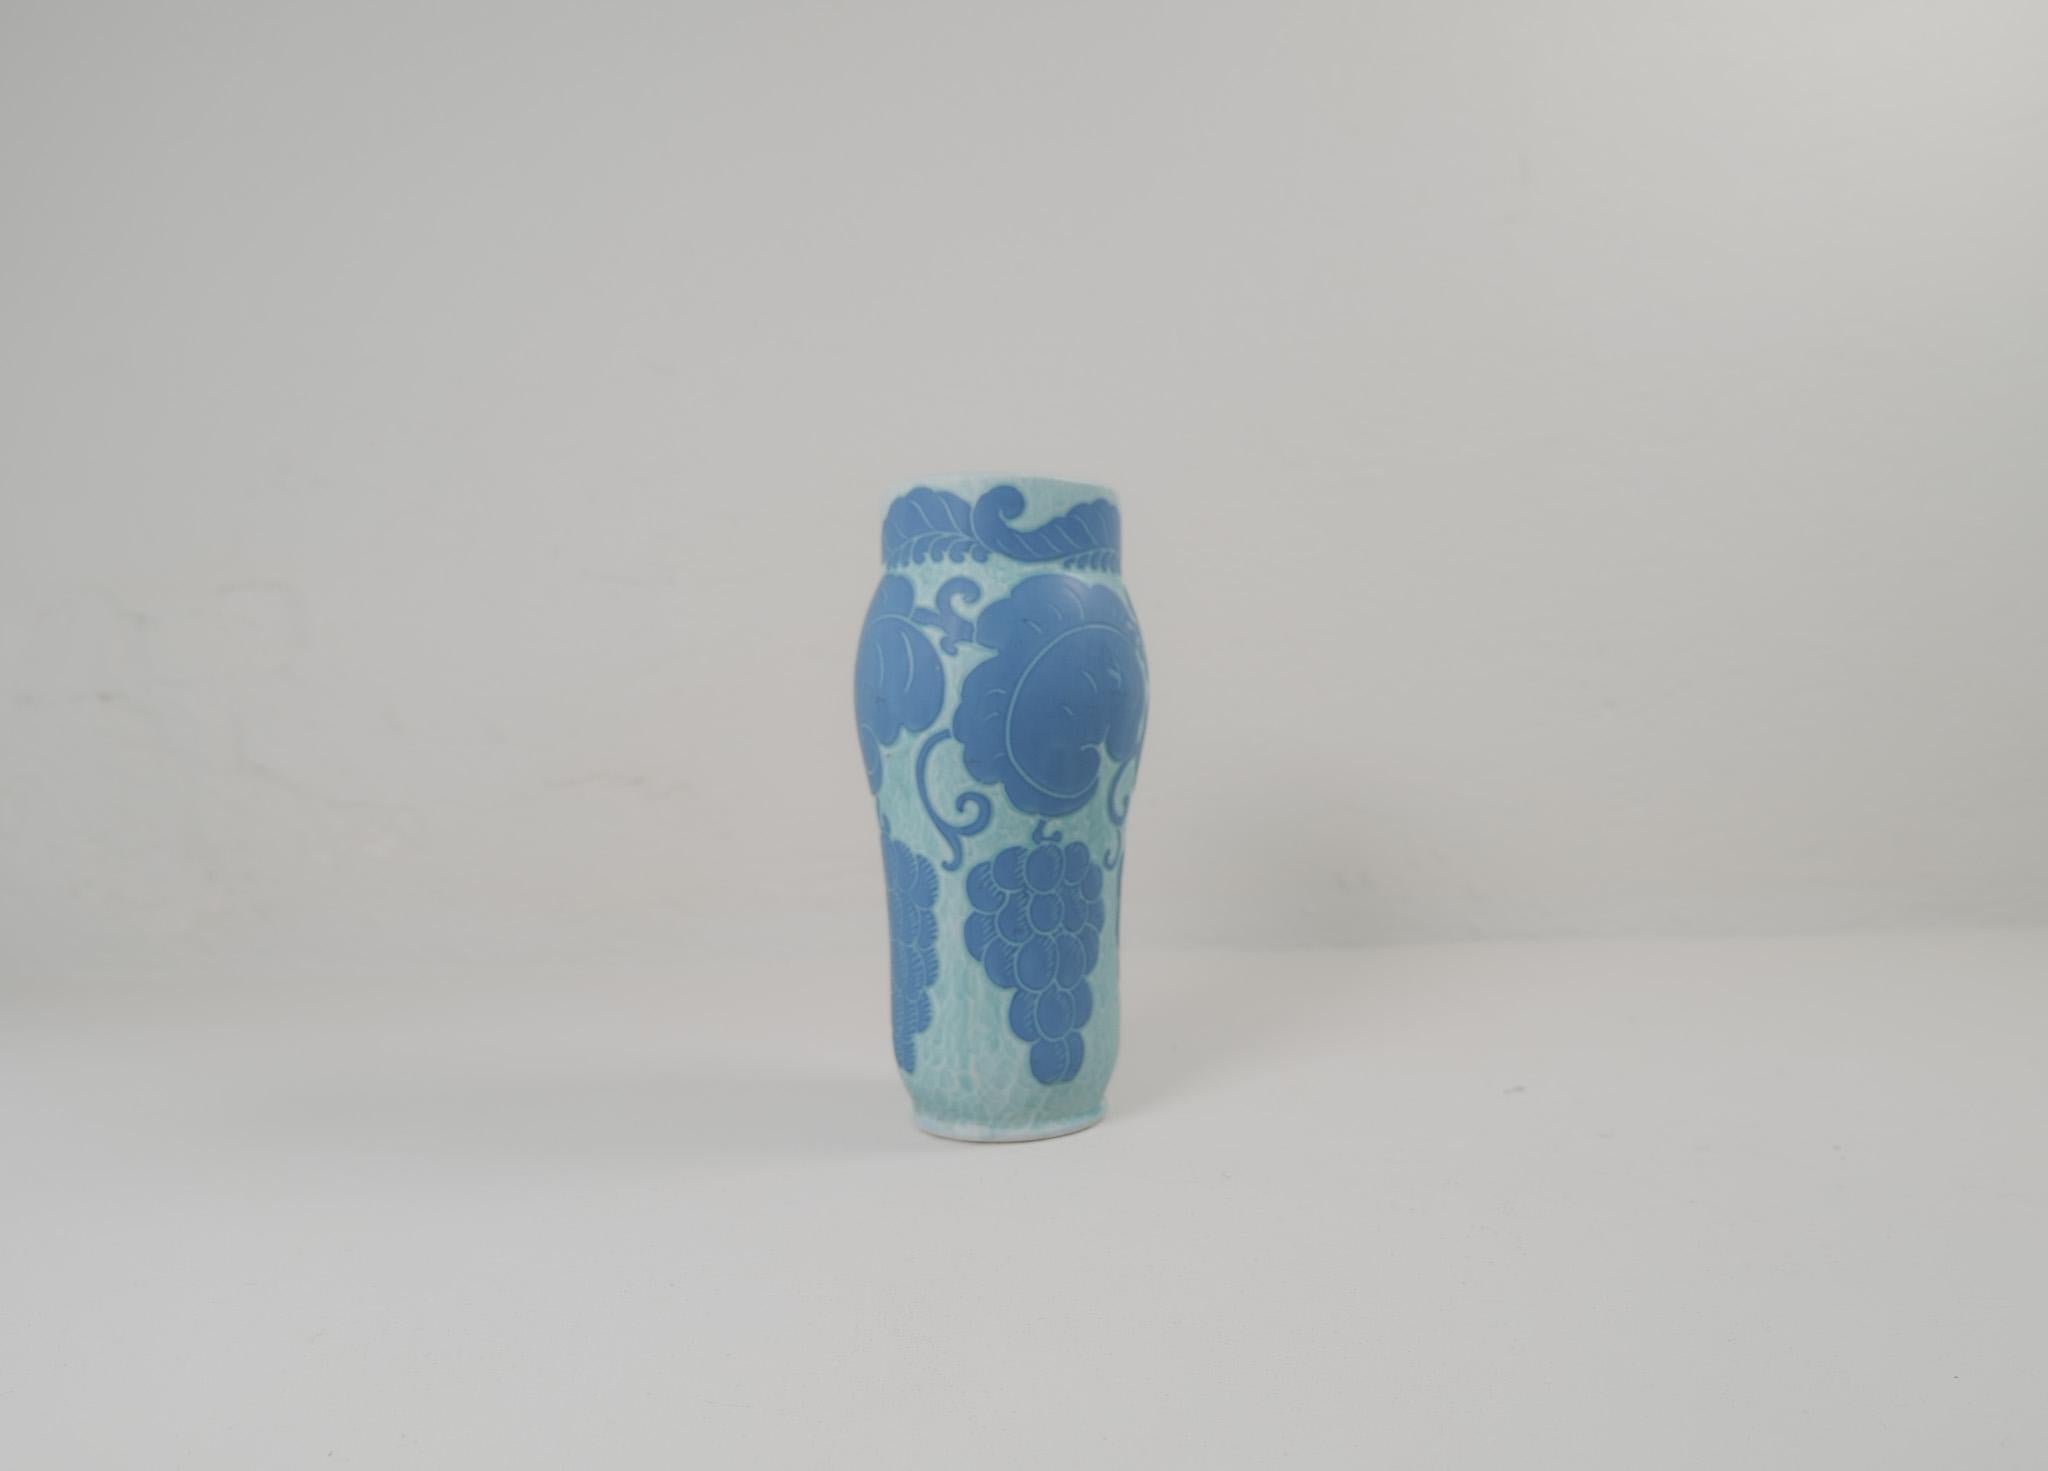 Sgraffito-Vase mit Blumen-/Traubenmotiv, von Josef Ekberg für Gustavsberg.
Sgraffito ist eine Art, zwei Schichten zu einem Muster zu kombinieren. Die zweite Schicht wird herausgeschnitten, und übrig bleibt ein hellblauer Hintergrund mit einem